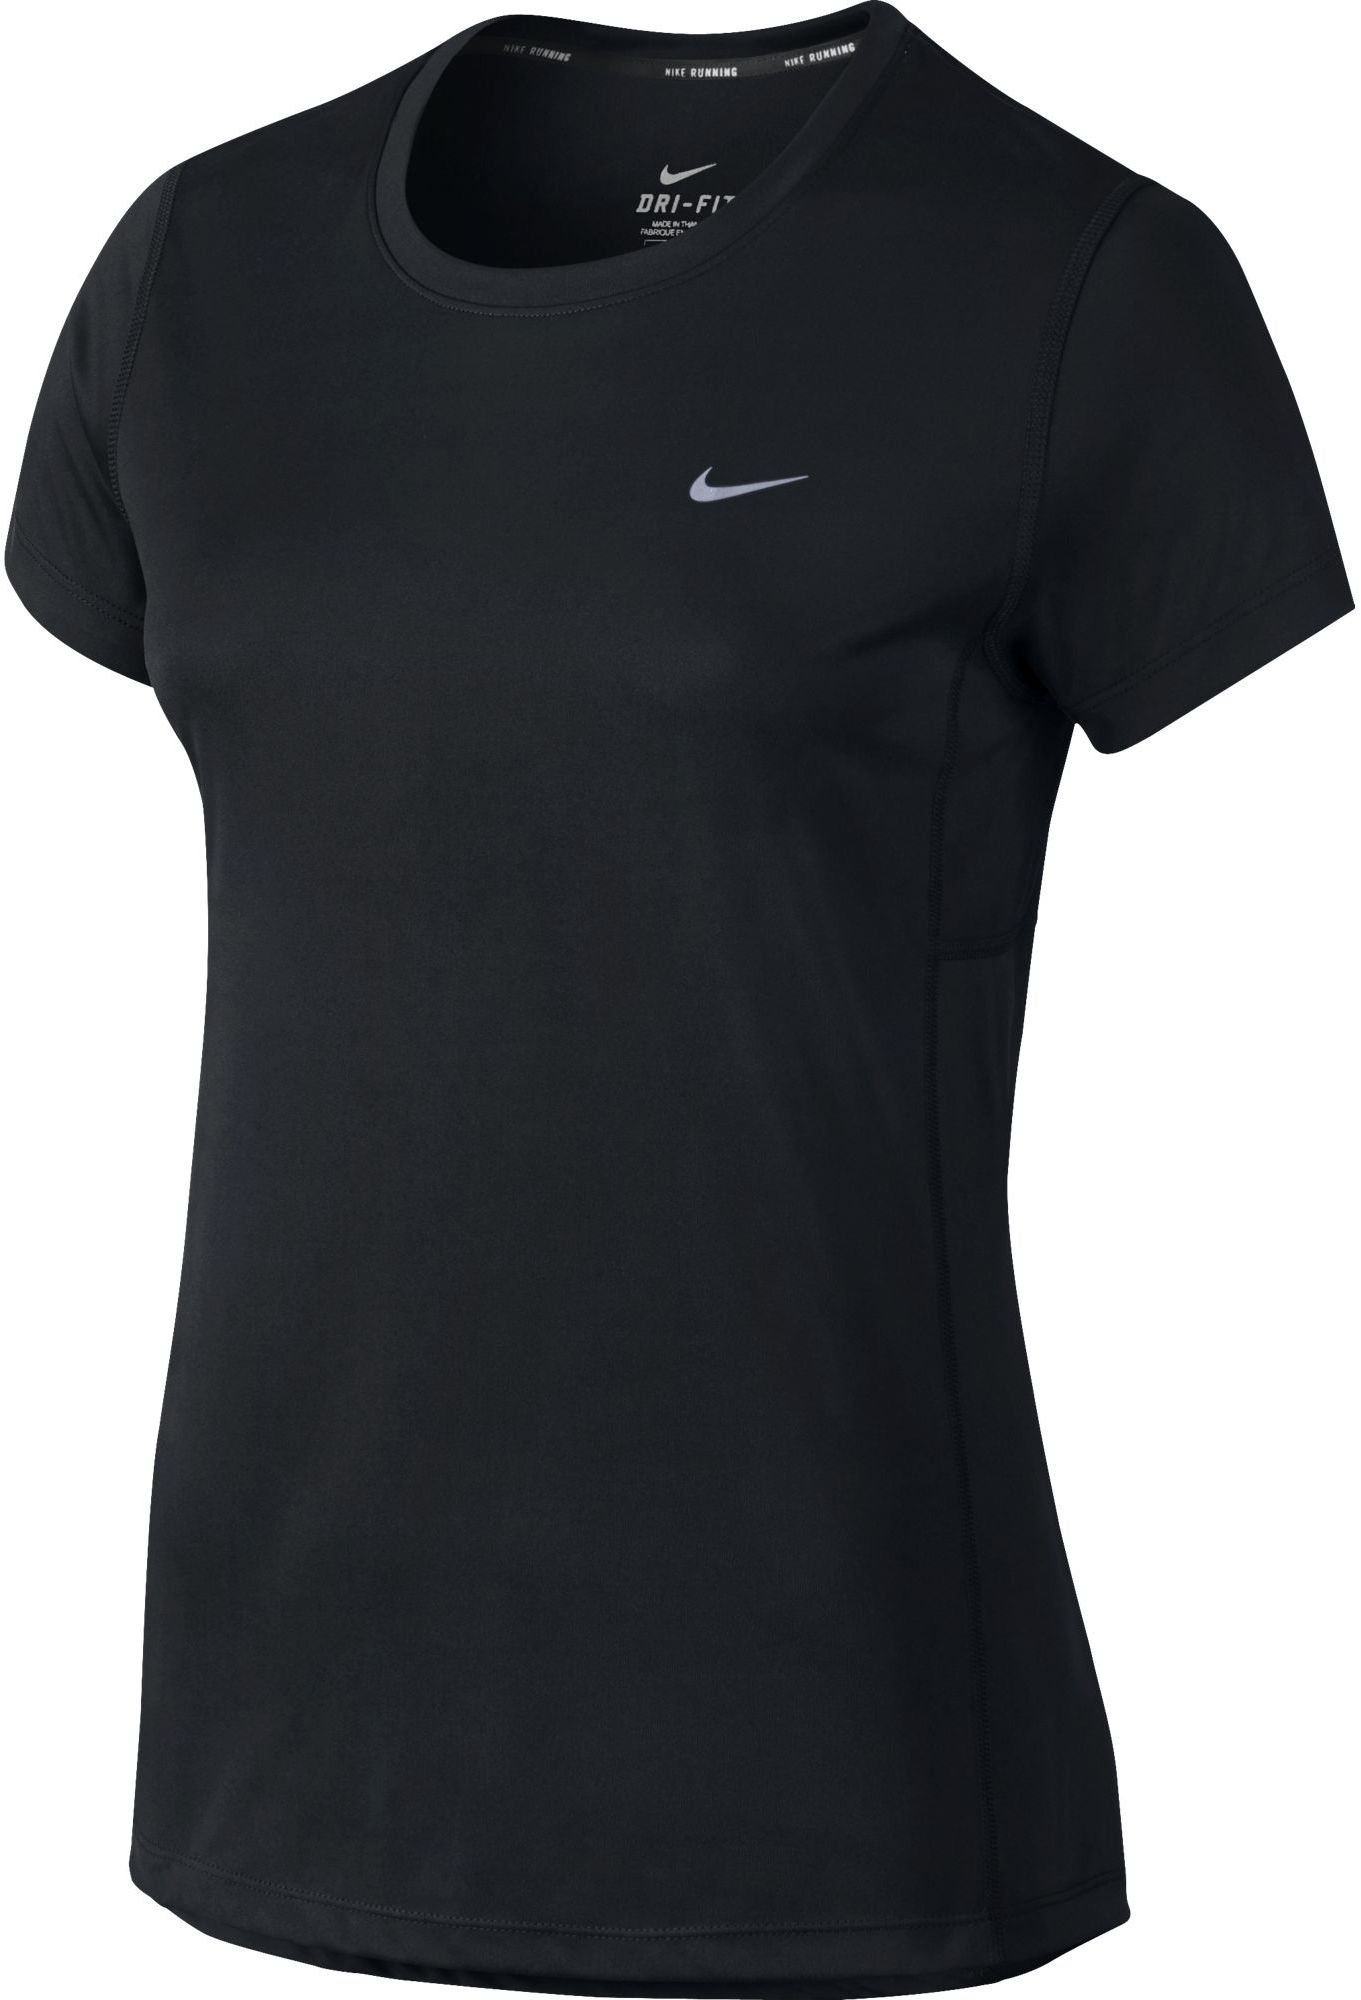 MILLER W - Women's Running Short-Sleeve Shirt